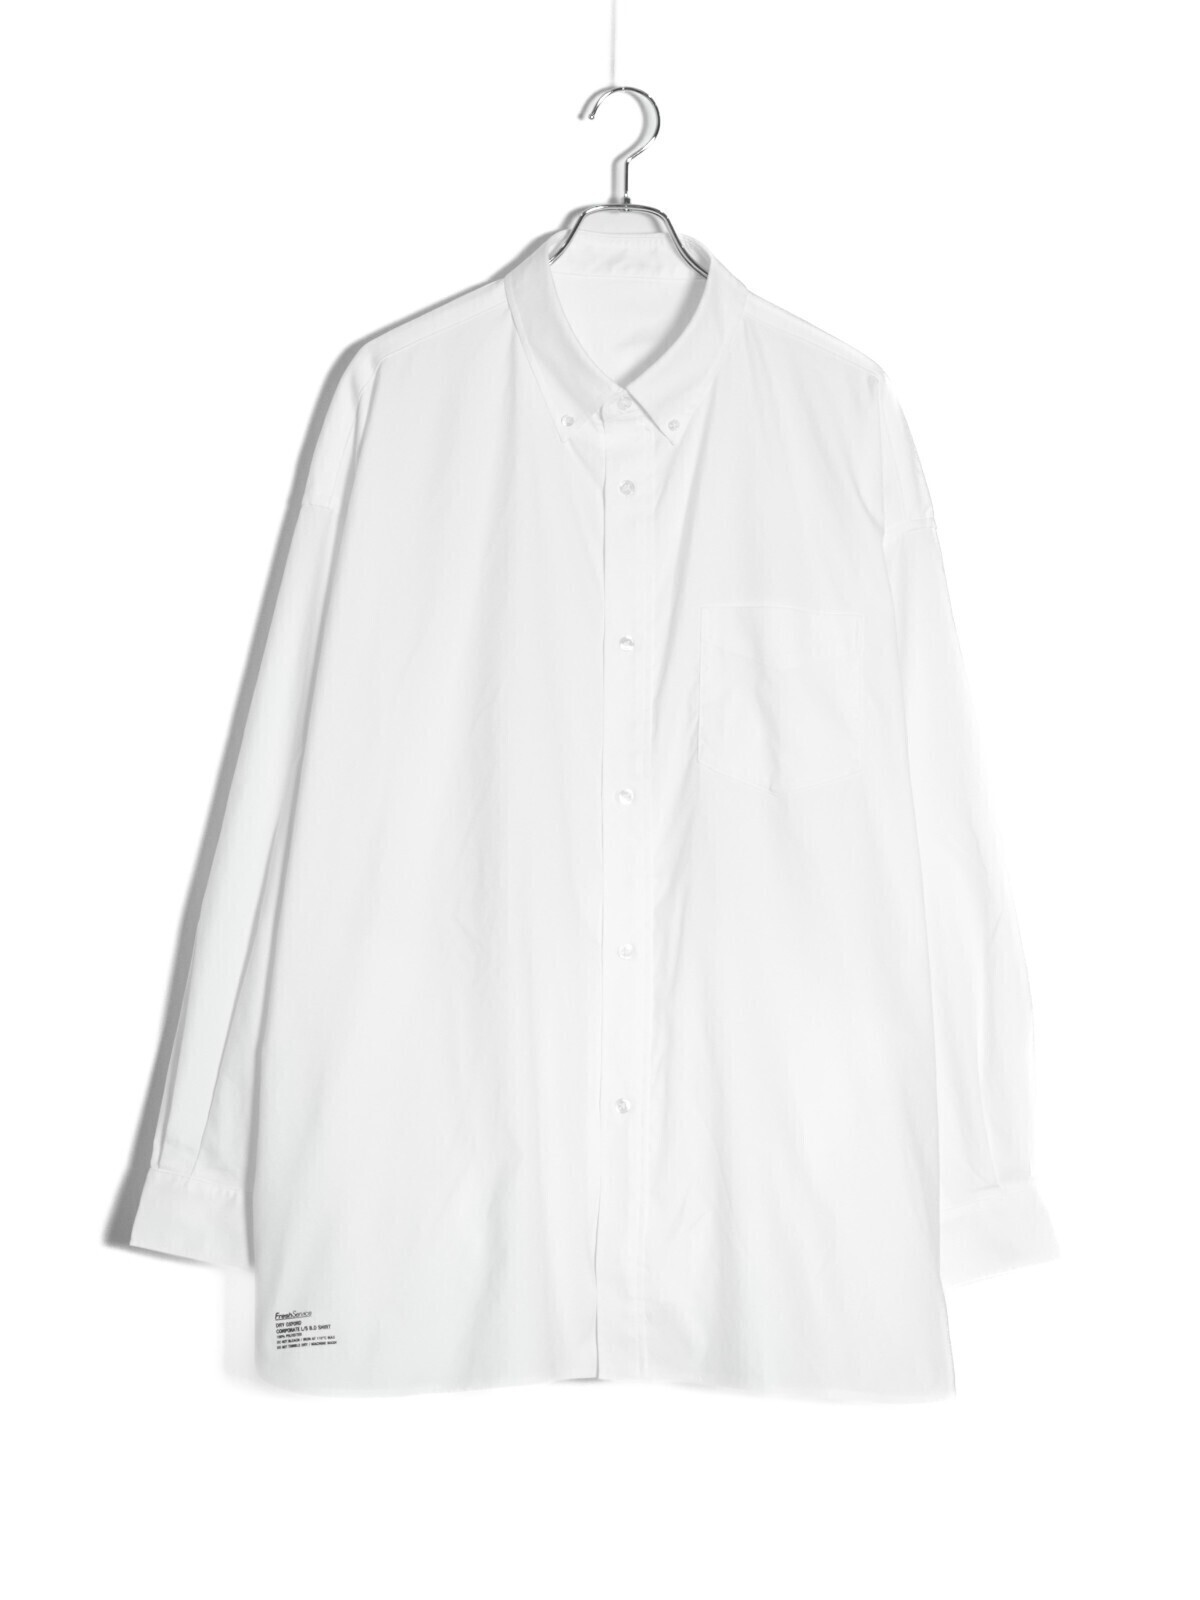 フレッシュサービス メンズ ドライオックスフォード コーポレートボタンダウンシャツ(長袖) 写真3